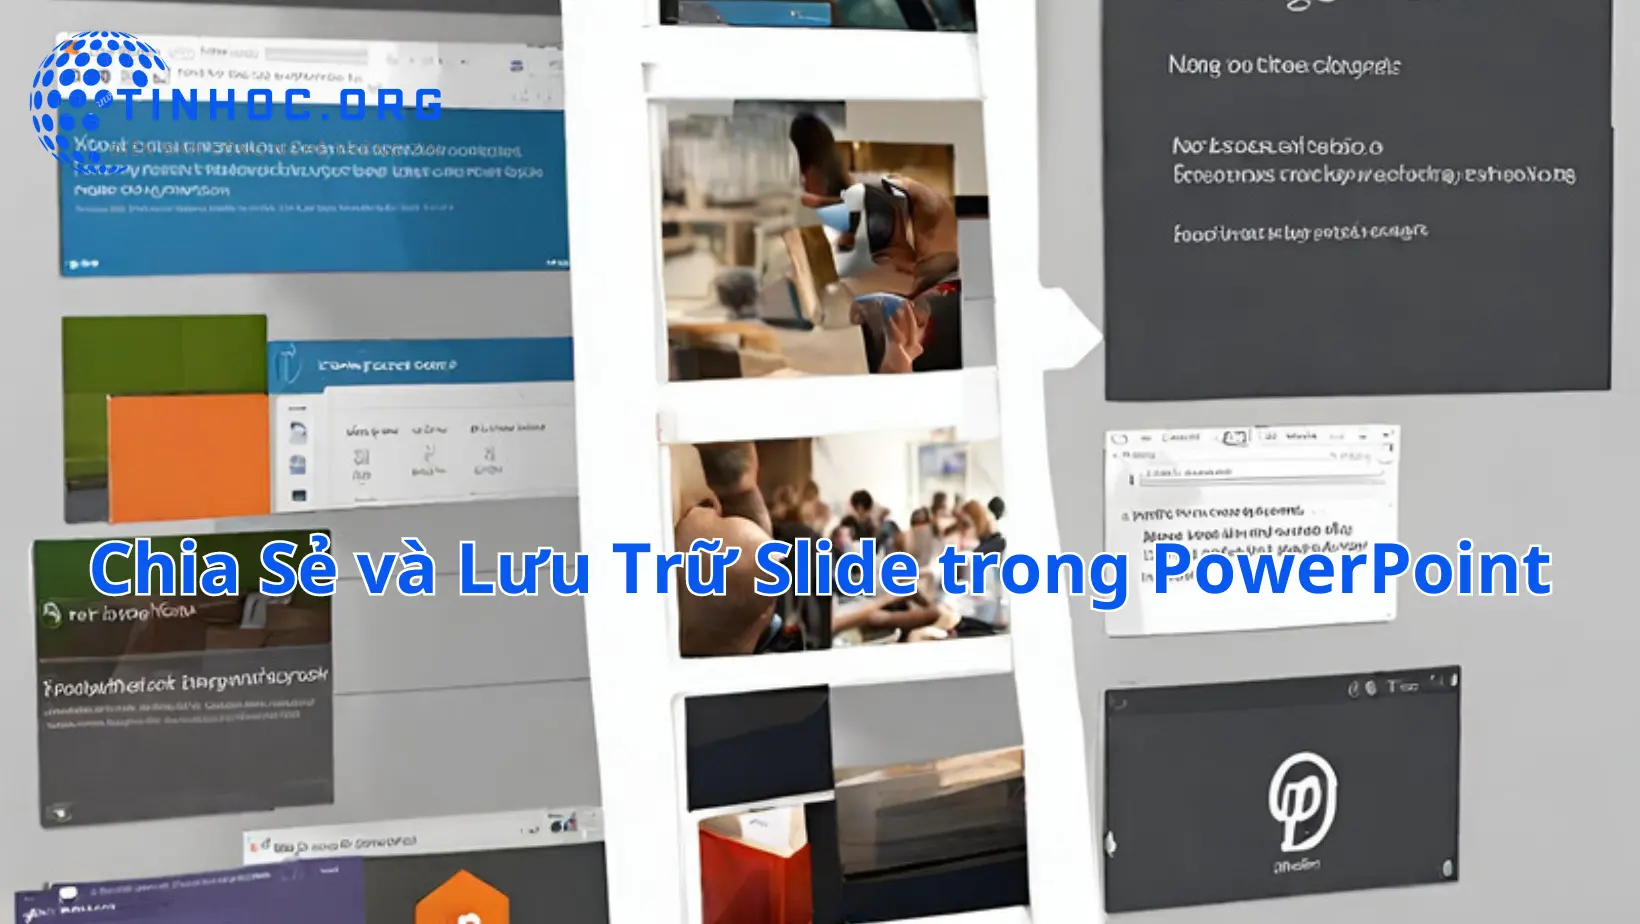 Sử dụng các công cụ và kỹ thuật chia sẻ và lưu trữ slide để tối ưu hóa quá trình thuyết trình và làm việc với PowerPoint.